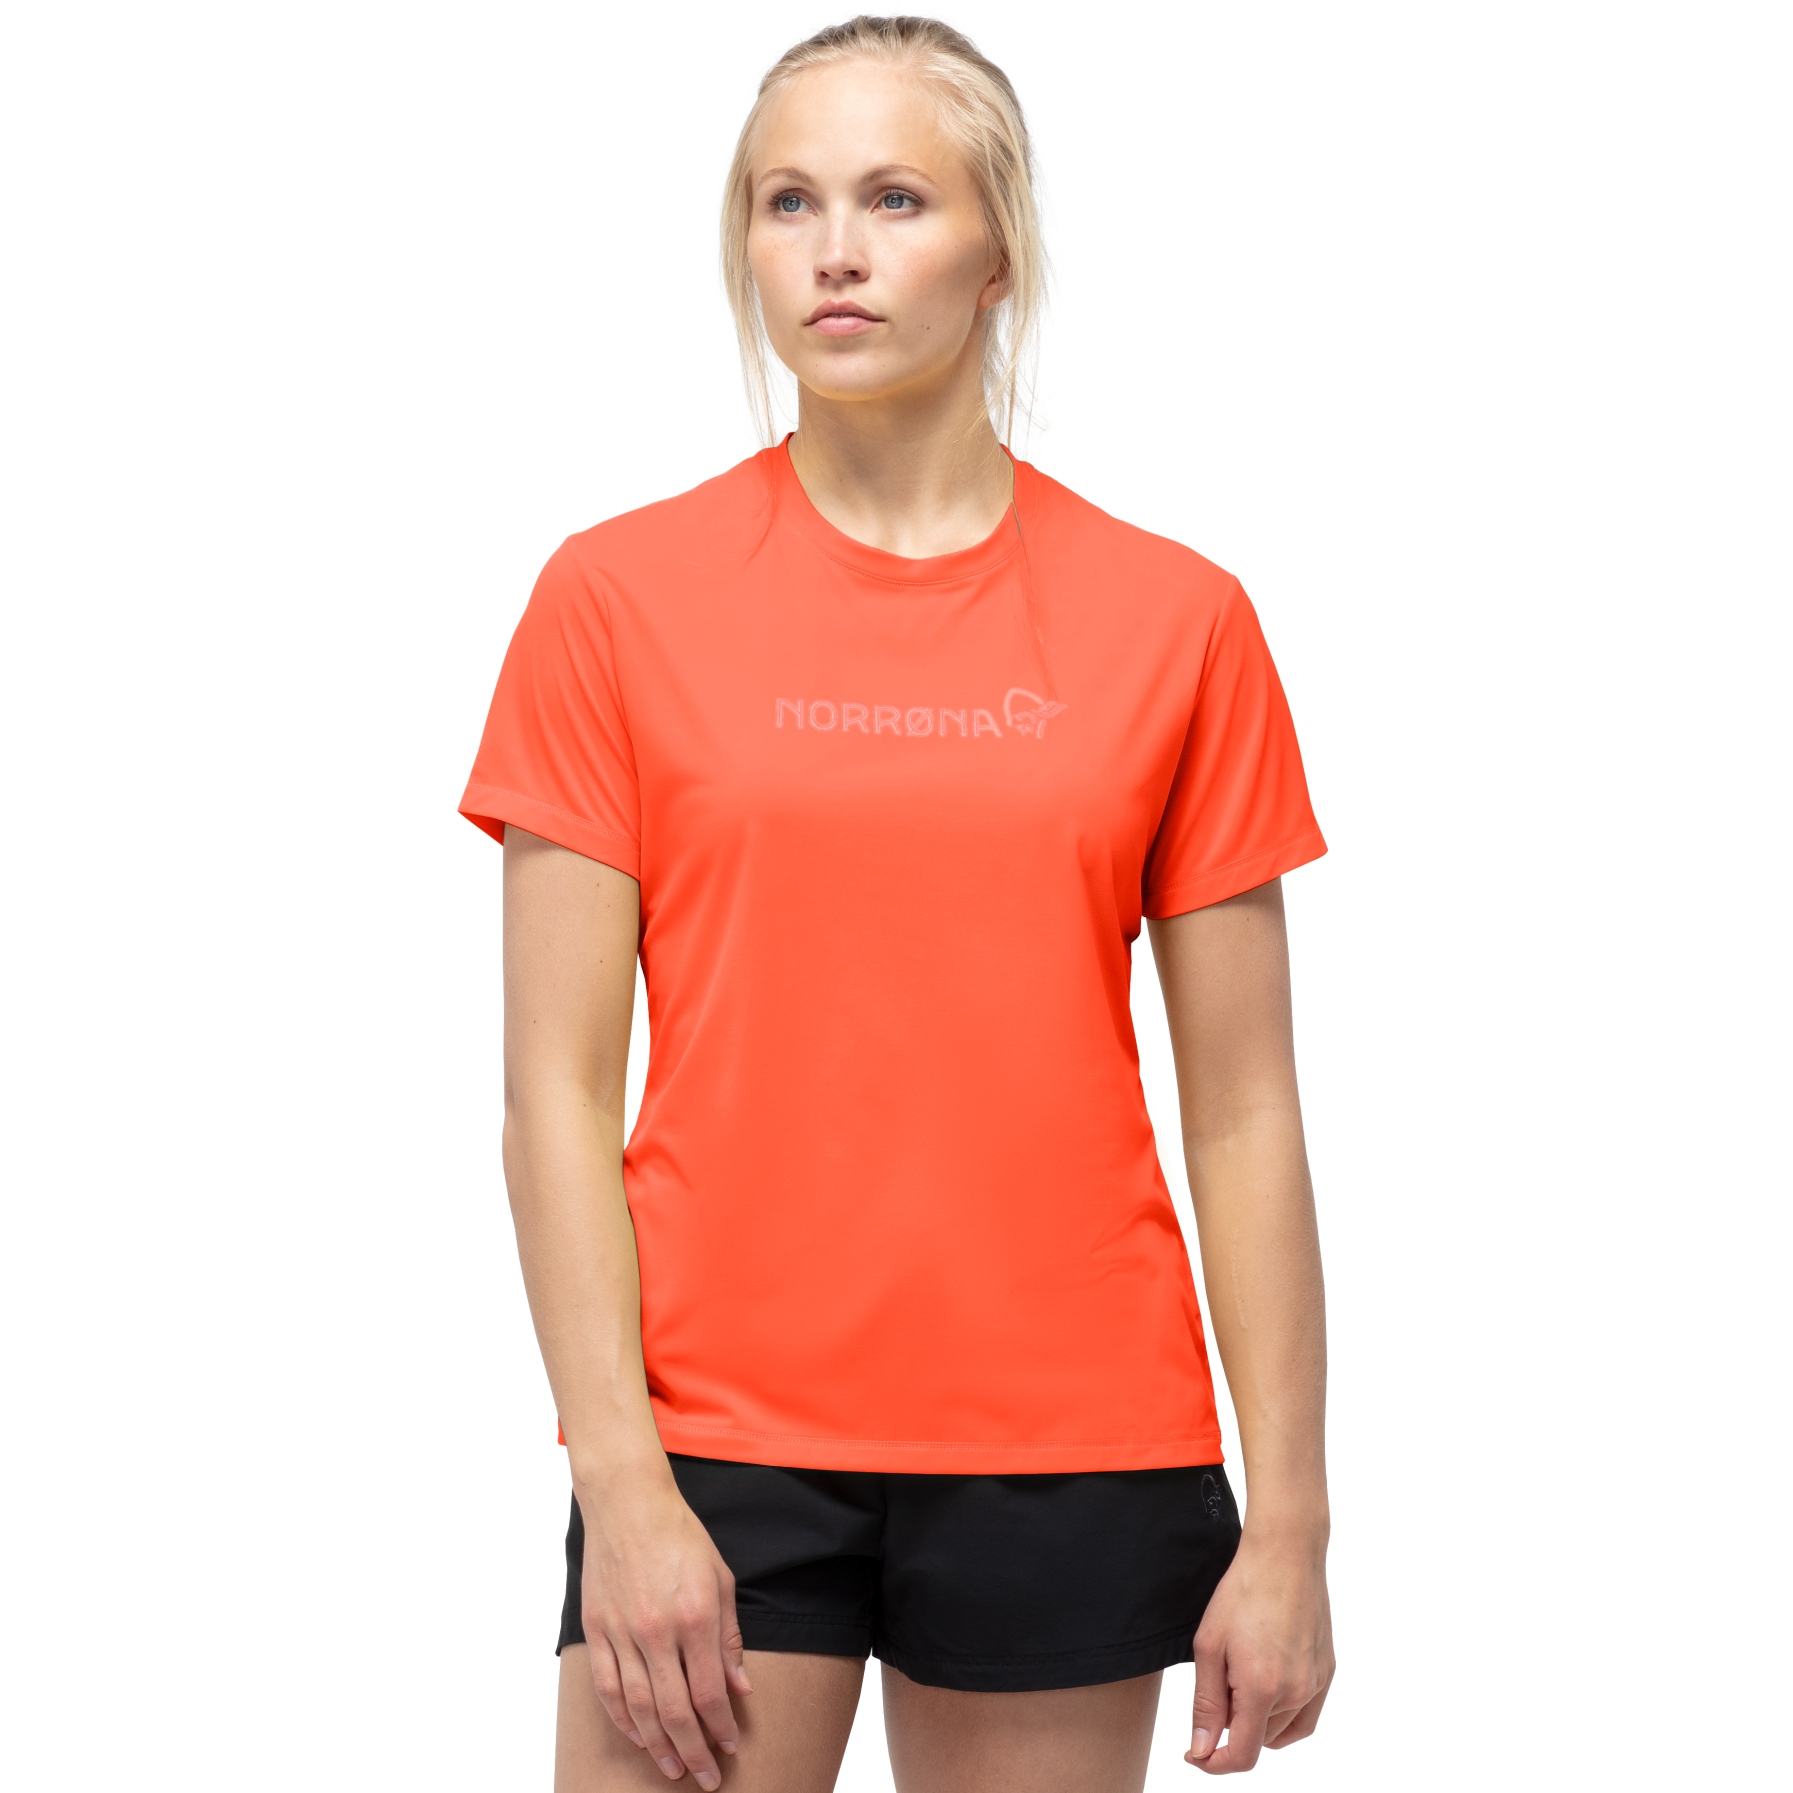 Produktbild von Norrona tech T-Shirt Damen - Orange Alert